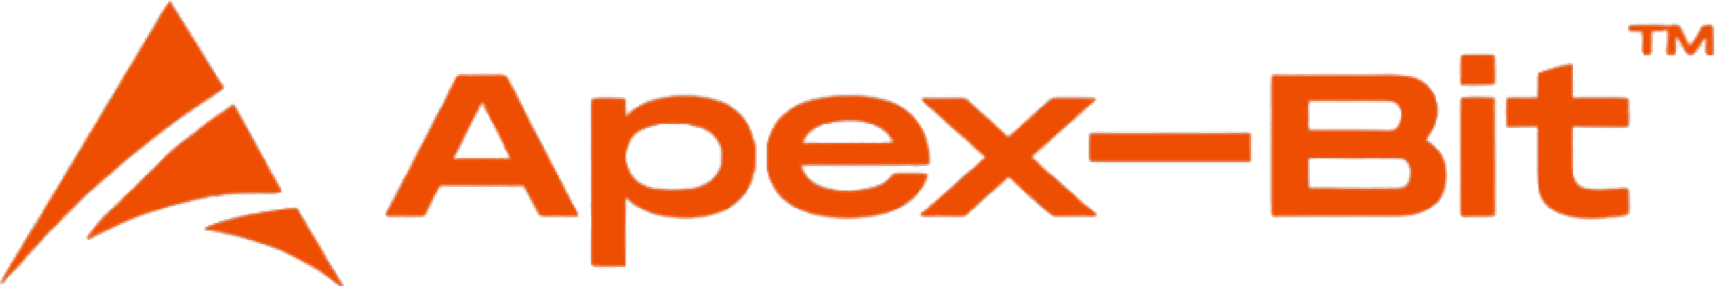 Apex-Bit